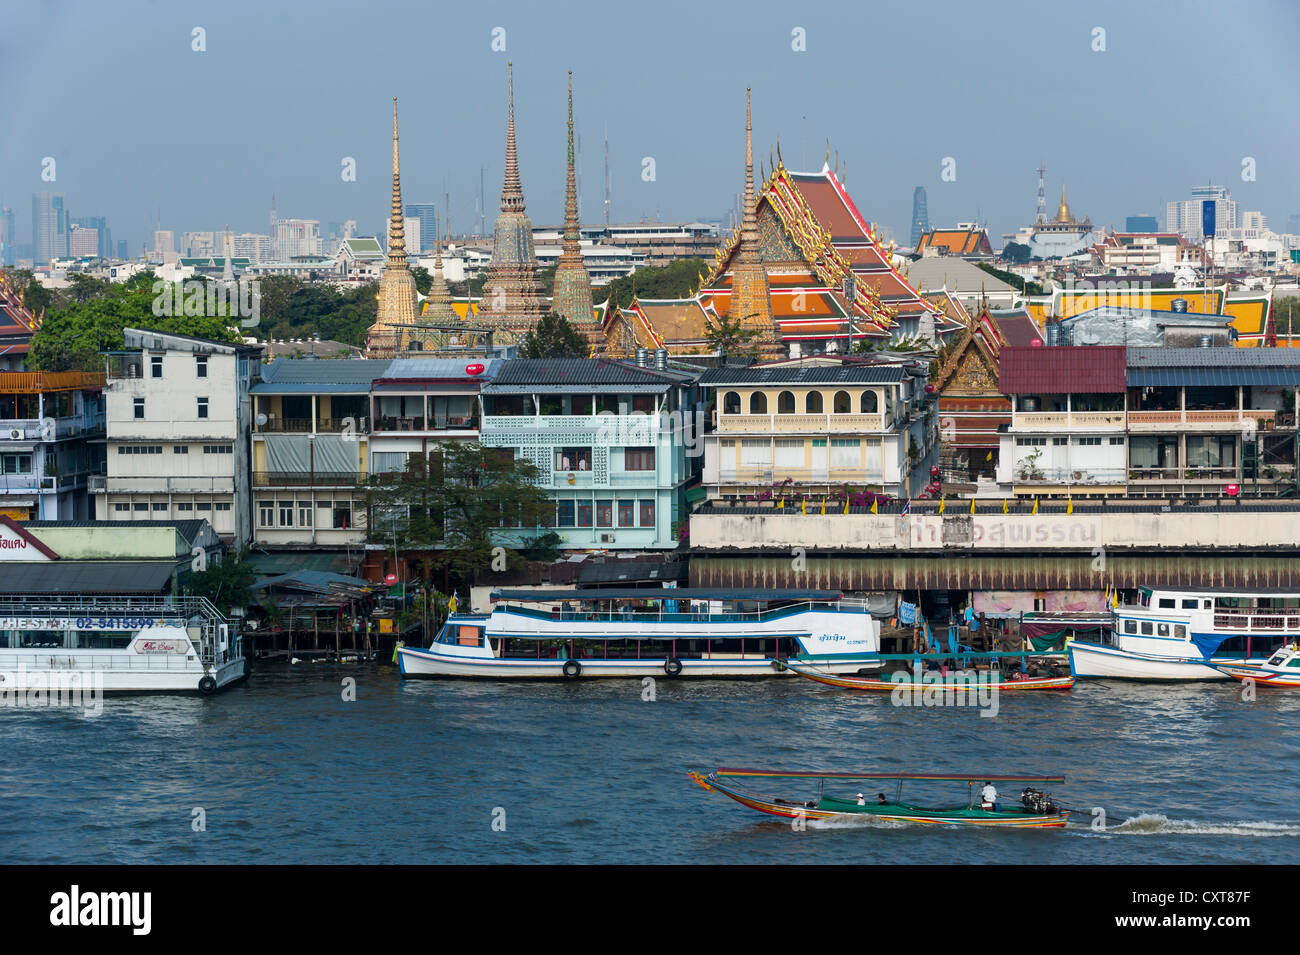 Bateaux sur le Chao Phraya, avec vue sur la ville, Bangkok, Thailande, Asie Banque D'Images